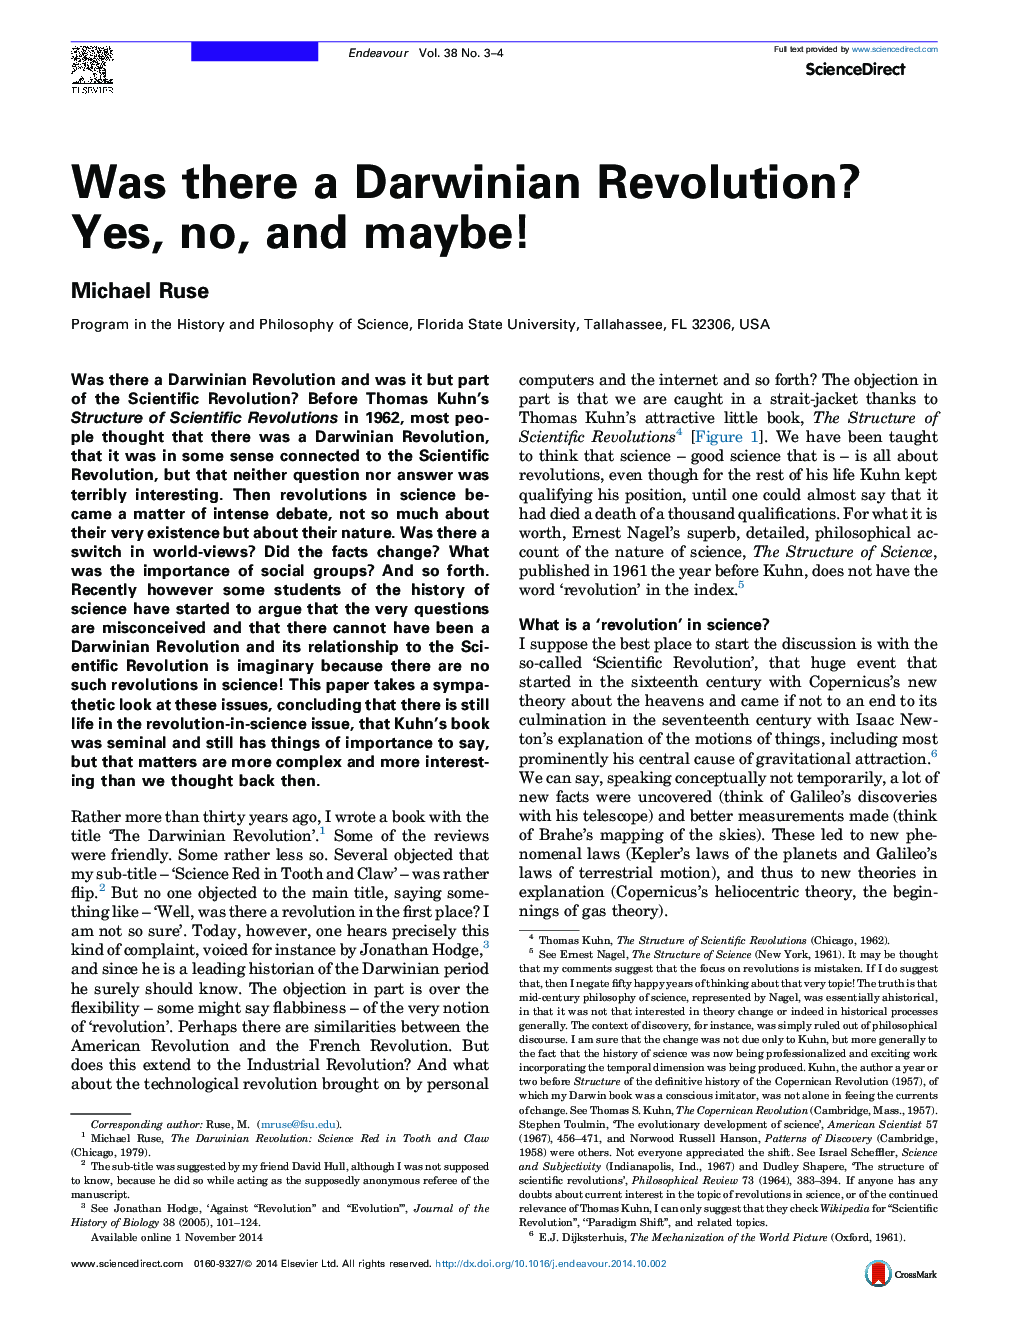 آیا یک انقلاب داروینی وجود داشت؟ بله، نه، و شاید! 